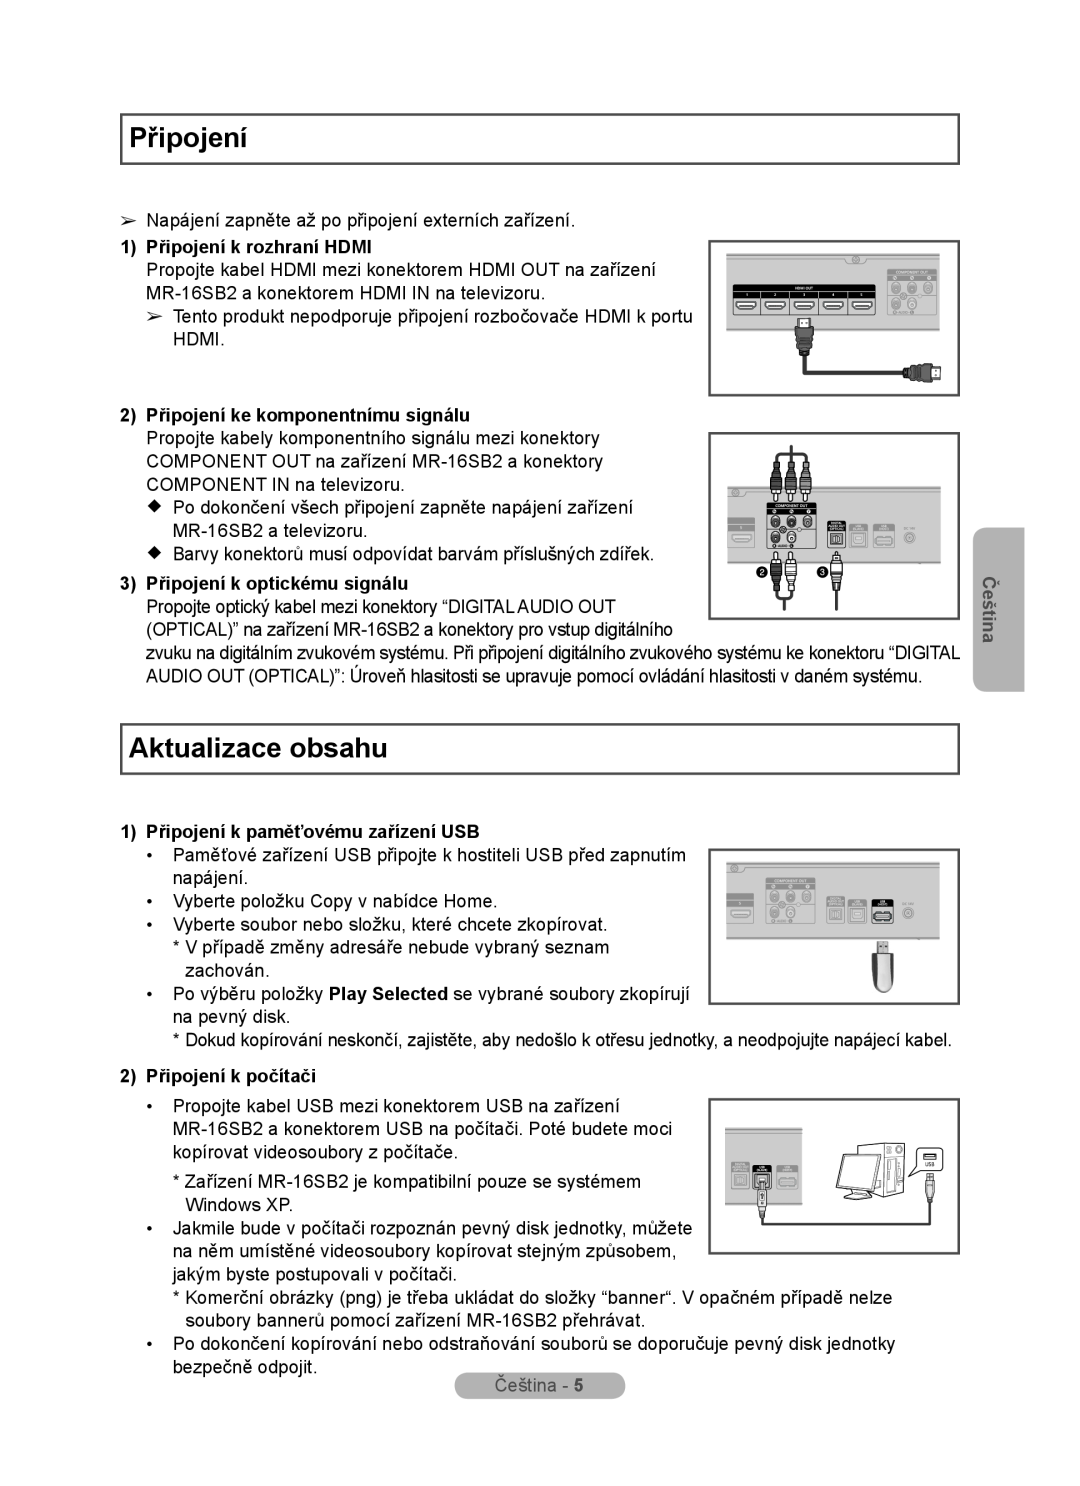 Samsung MR-16SB2 manual Aktualizace obsahu, 1 Připojení k rozhraní HDMI, 2 Připojení ke komponentnímu signálu, Čeština 